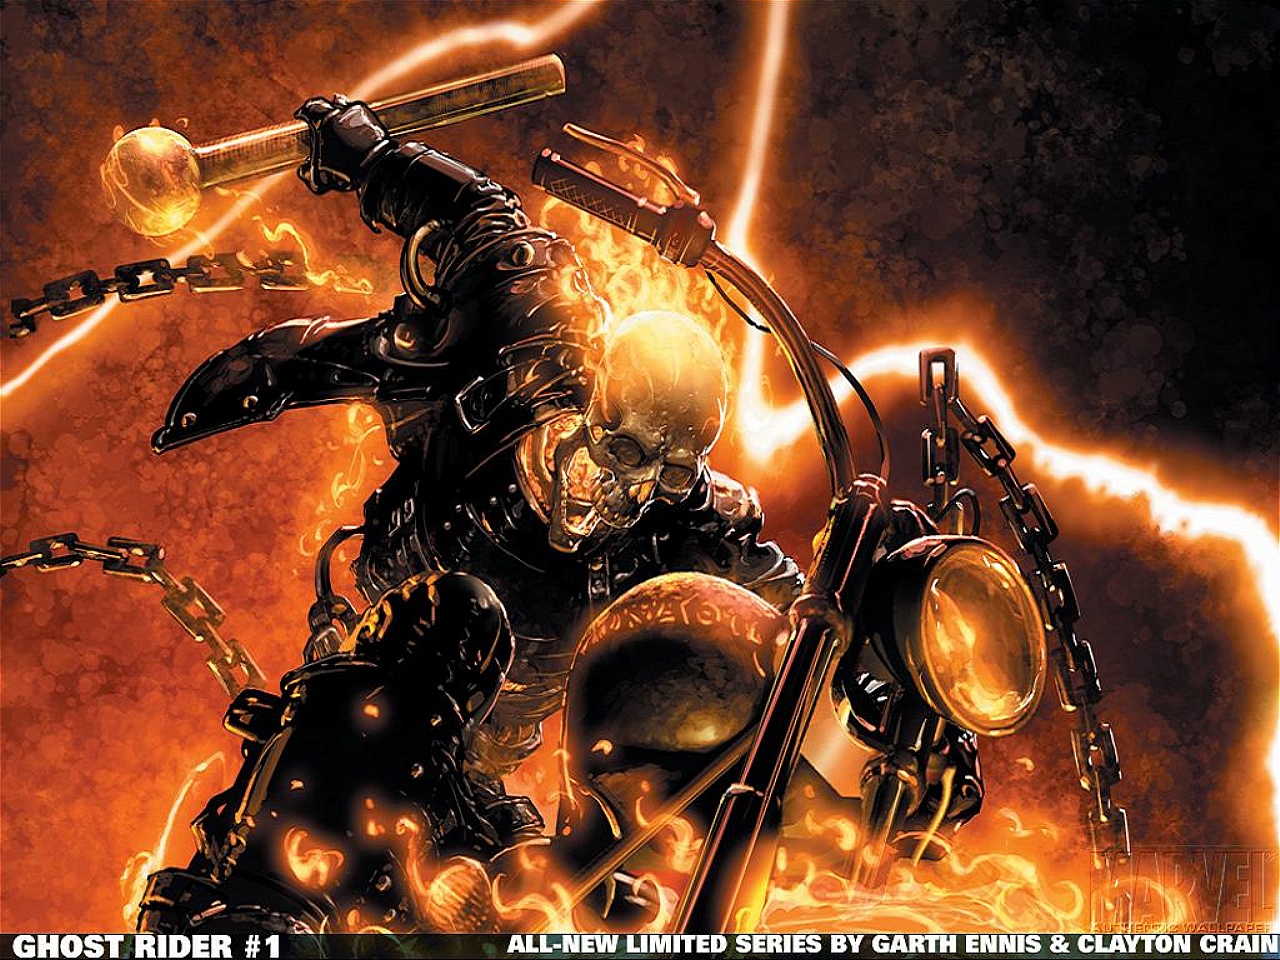 47+] Wallpaper Ghost Rider 2 - WallpaperSafari